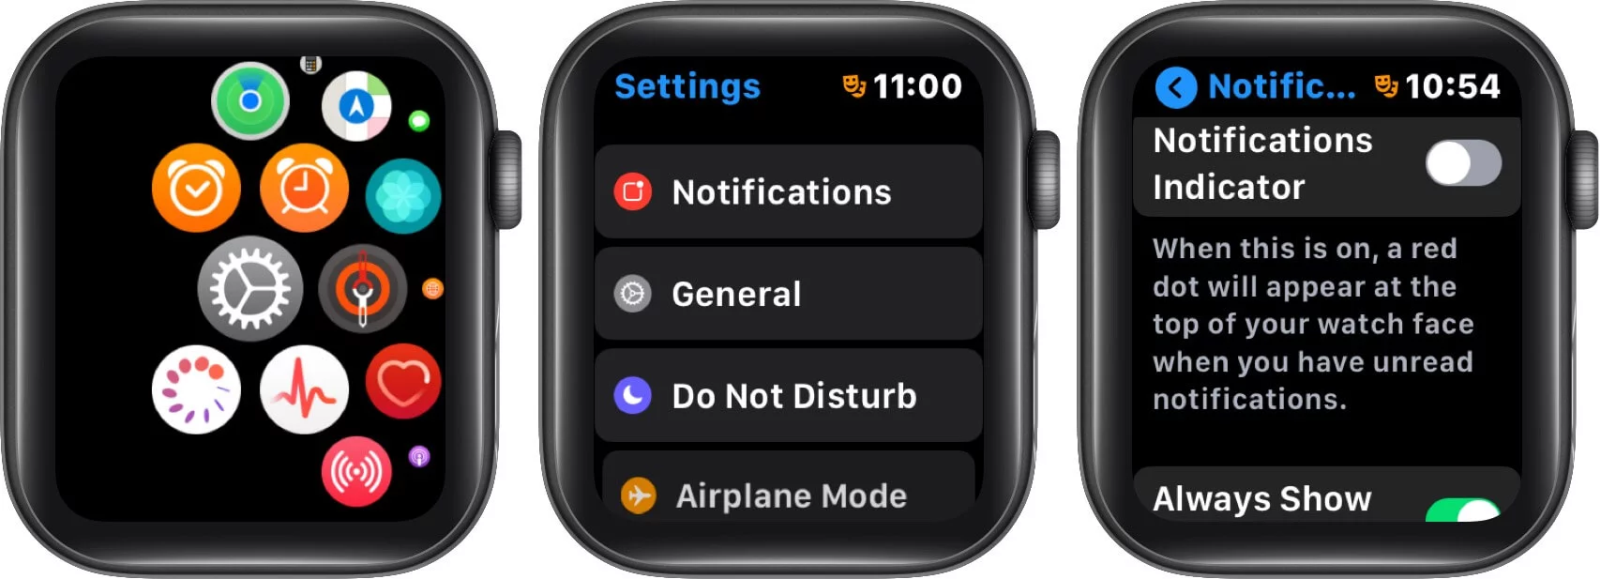 cách tắt dấu chấm đỏ trên màn hình apple watch